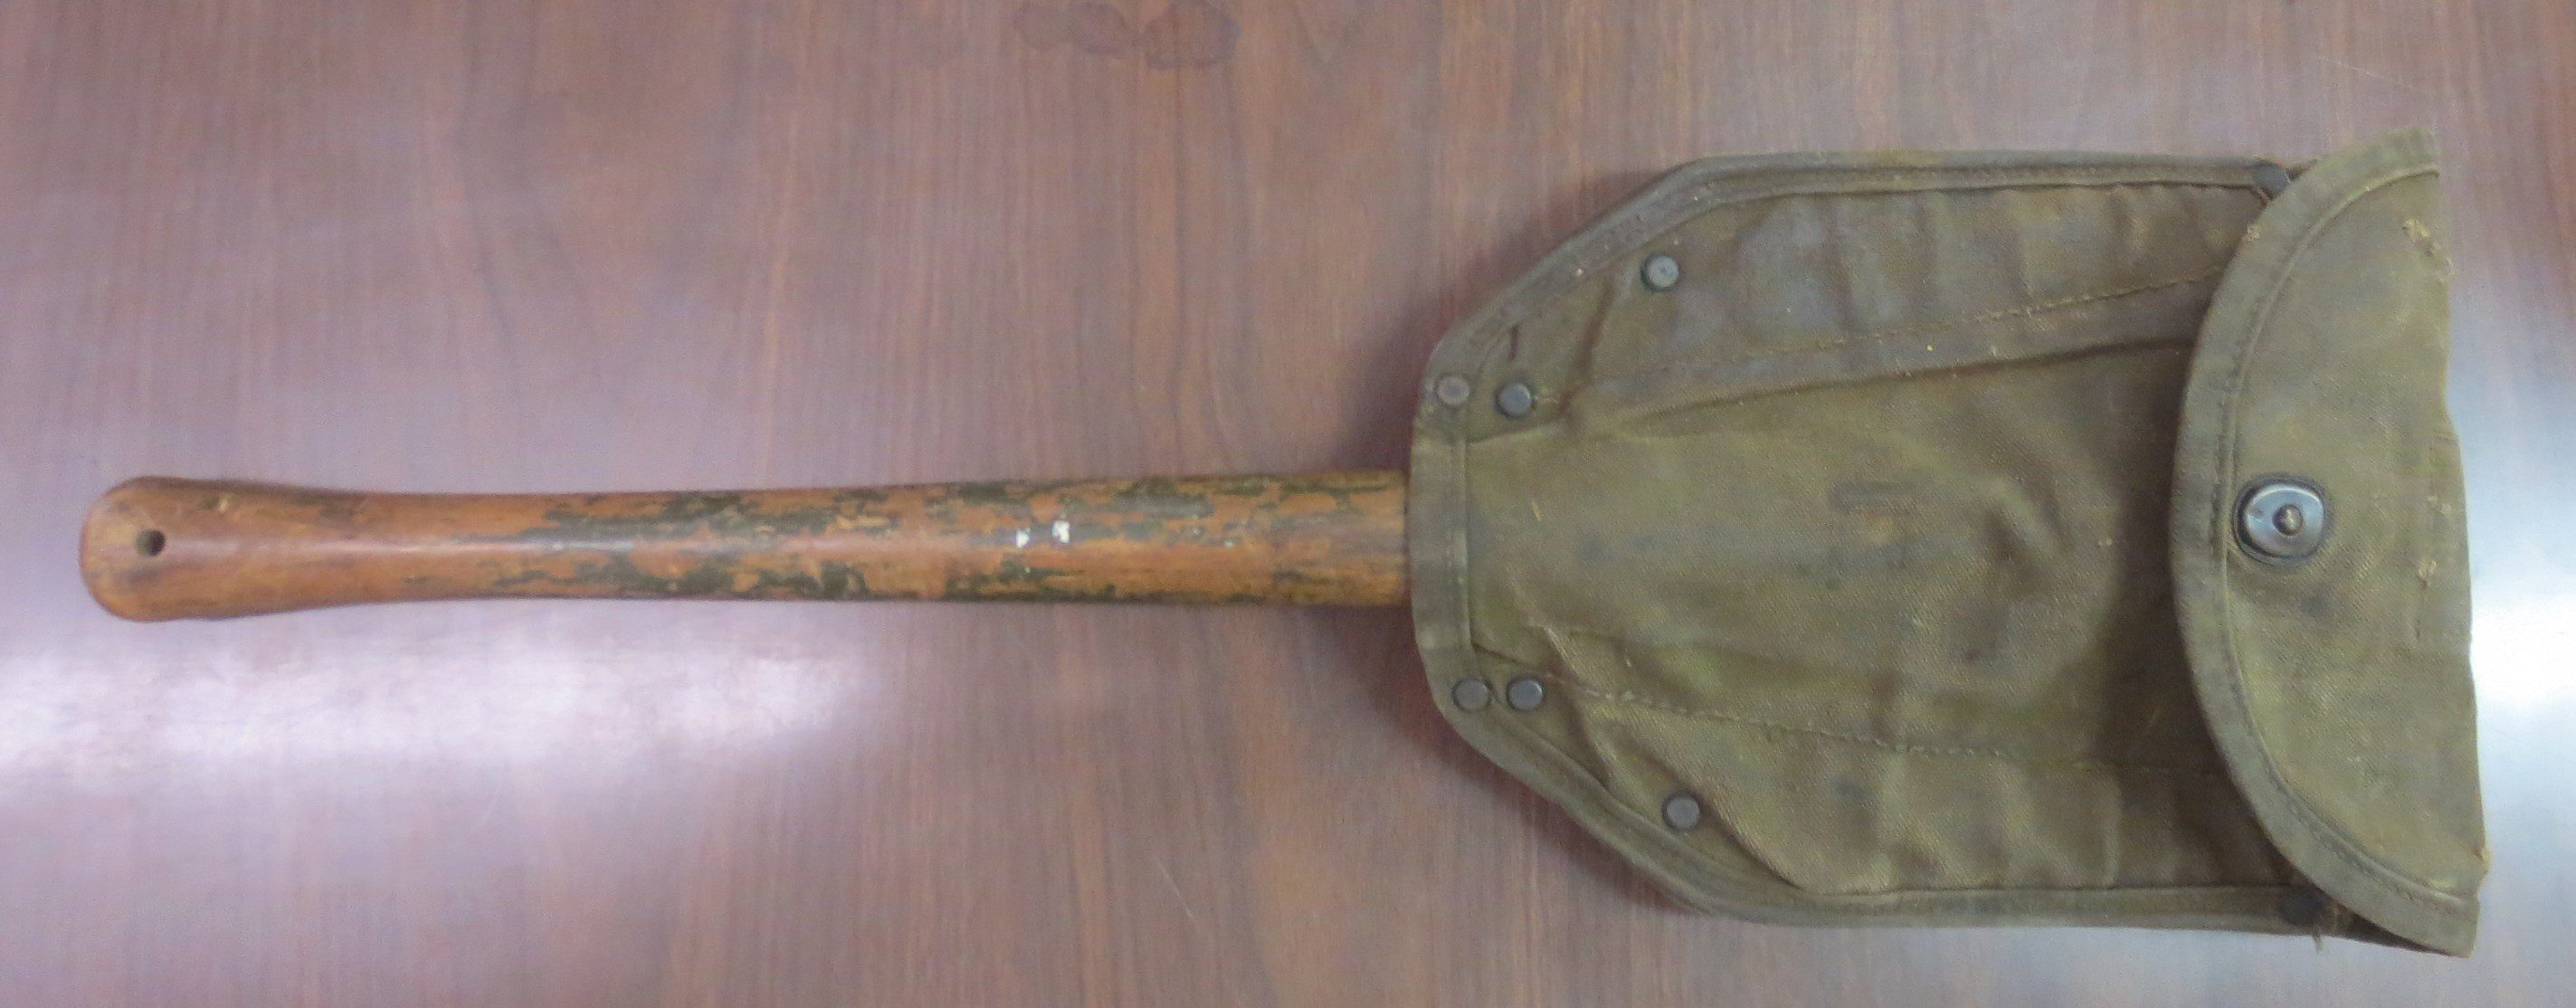 Combat shovel inside a pocket